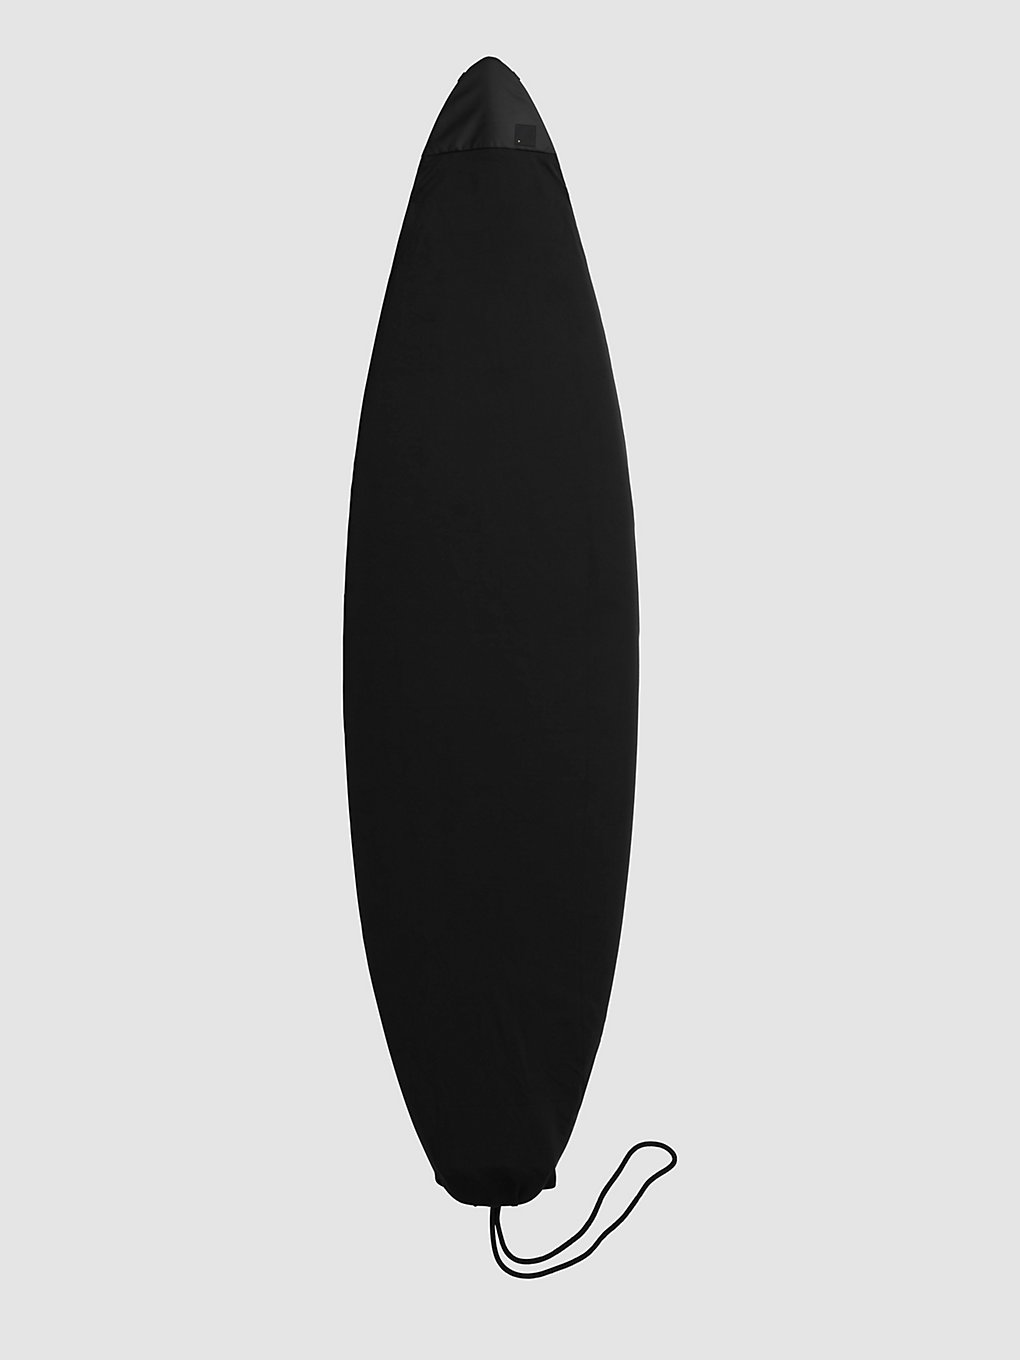 Db Surf Sock 5'8" Stab Ltd Surfboard Bag stab ltd kaufen